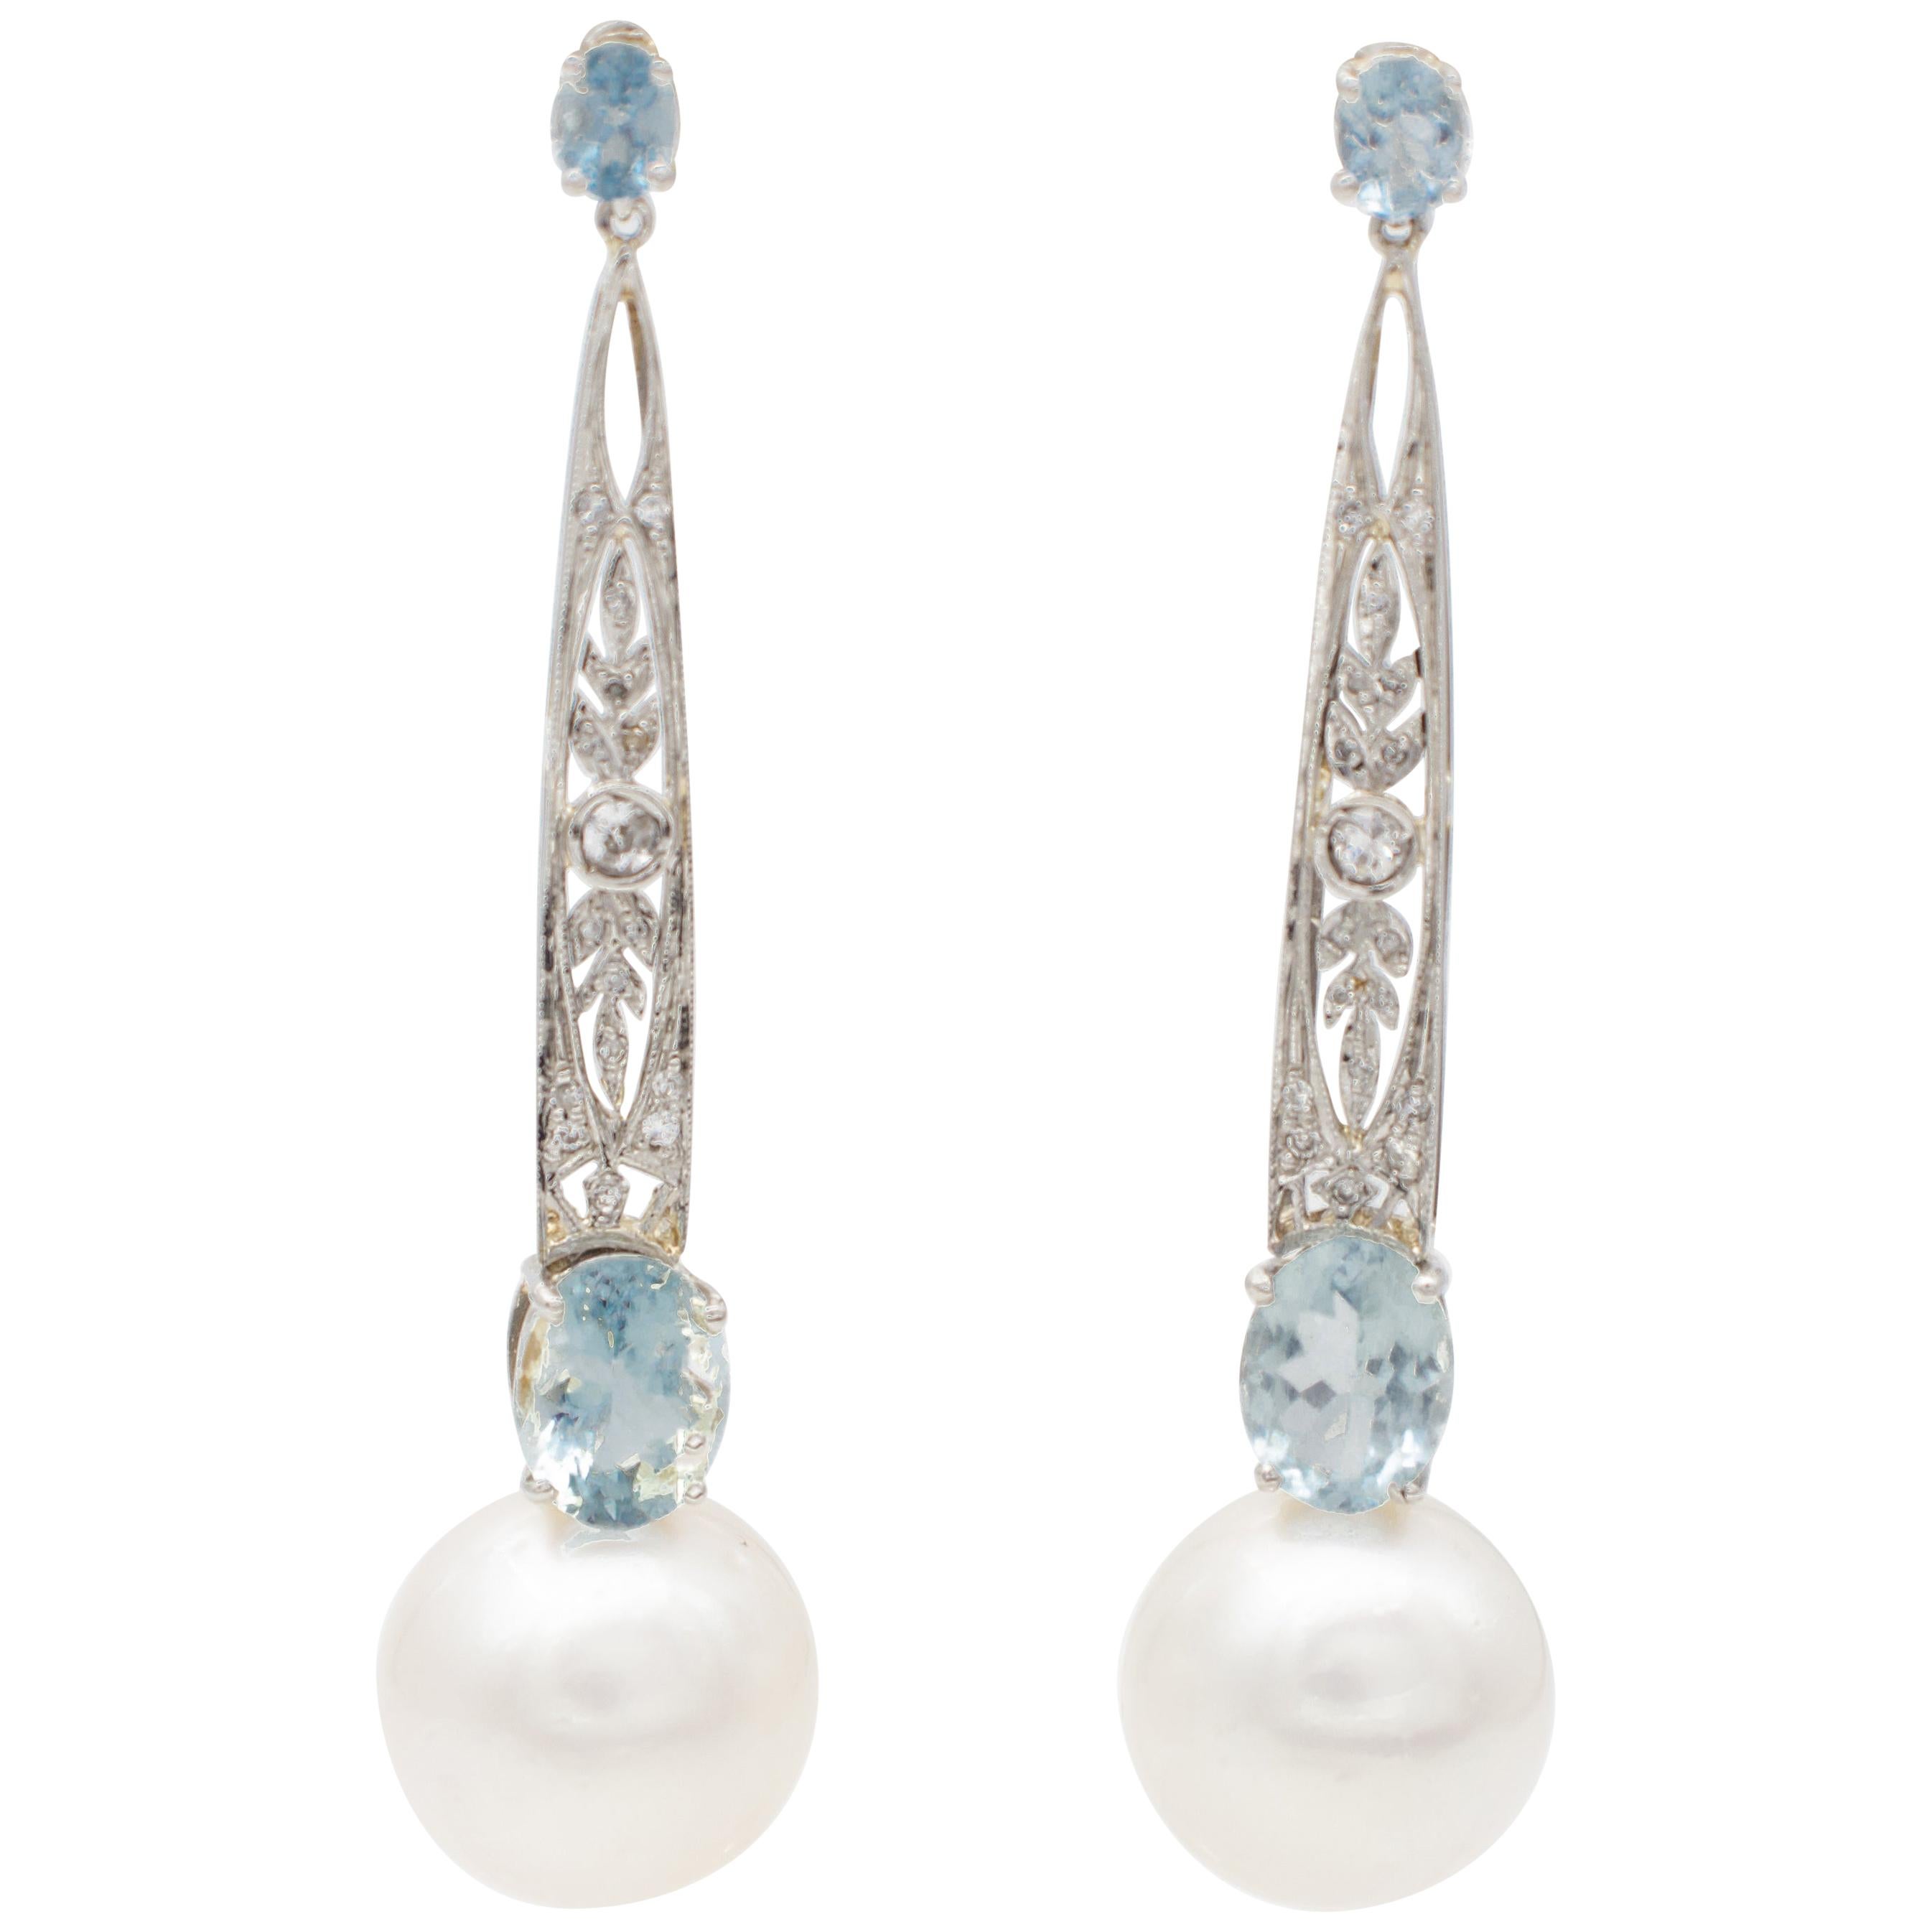 Boucles d'oreilles pendantes en platine, perles blanches, aigues-marines et diamants